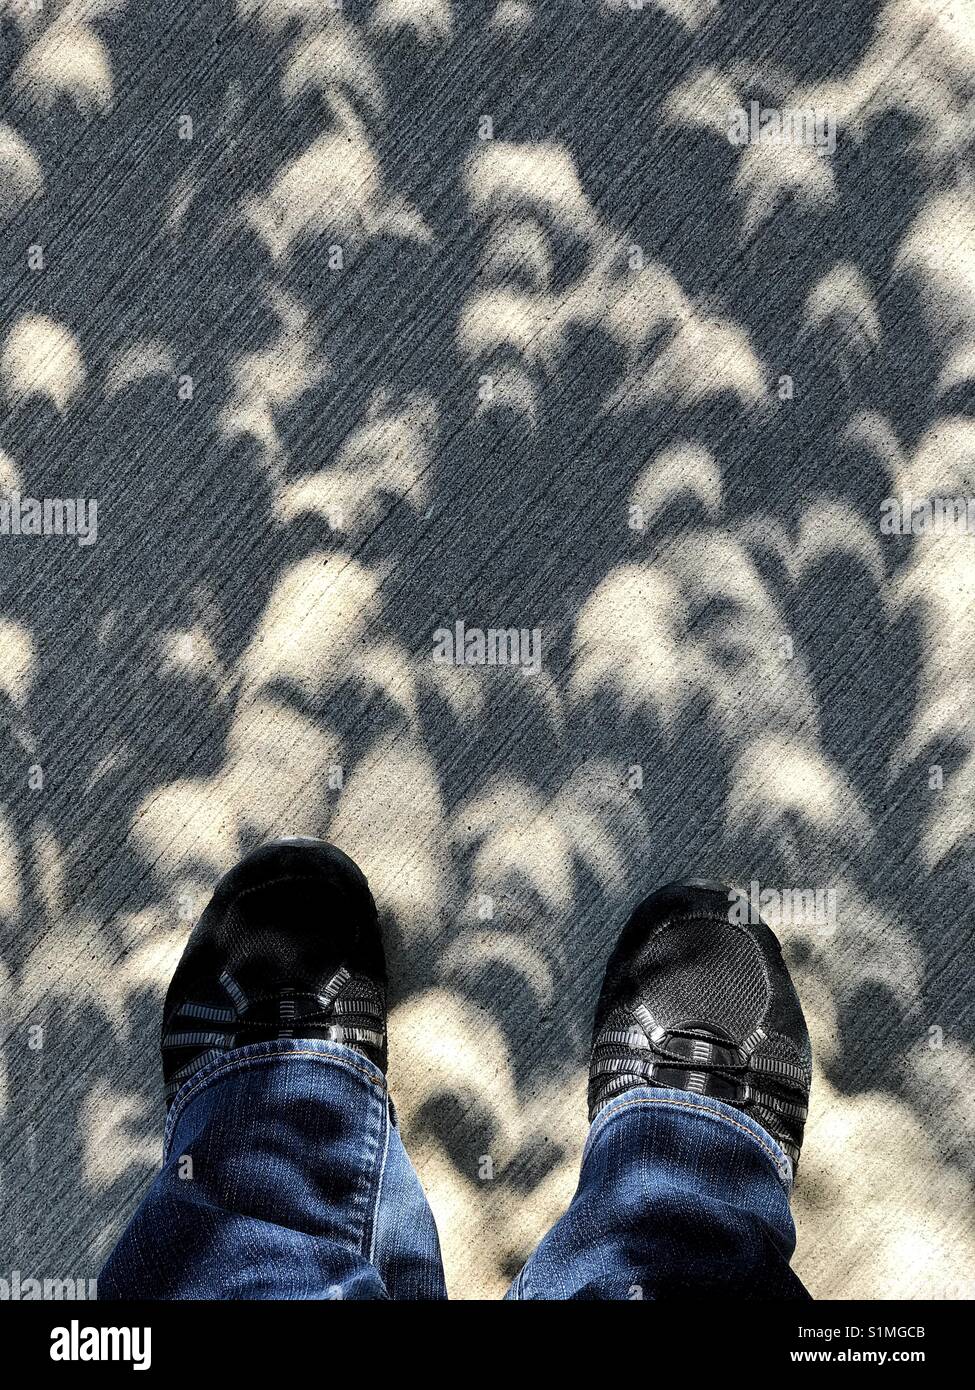 Personne debout dans l'ombre avec la lumière en forme de croissant des correctifs, pendant une éclipse solaire, à Calgary, Alberta, Canada. Banque D'Images